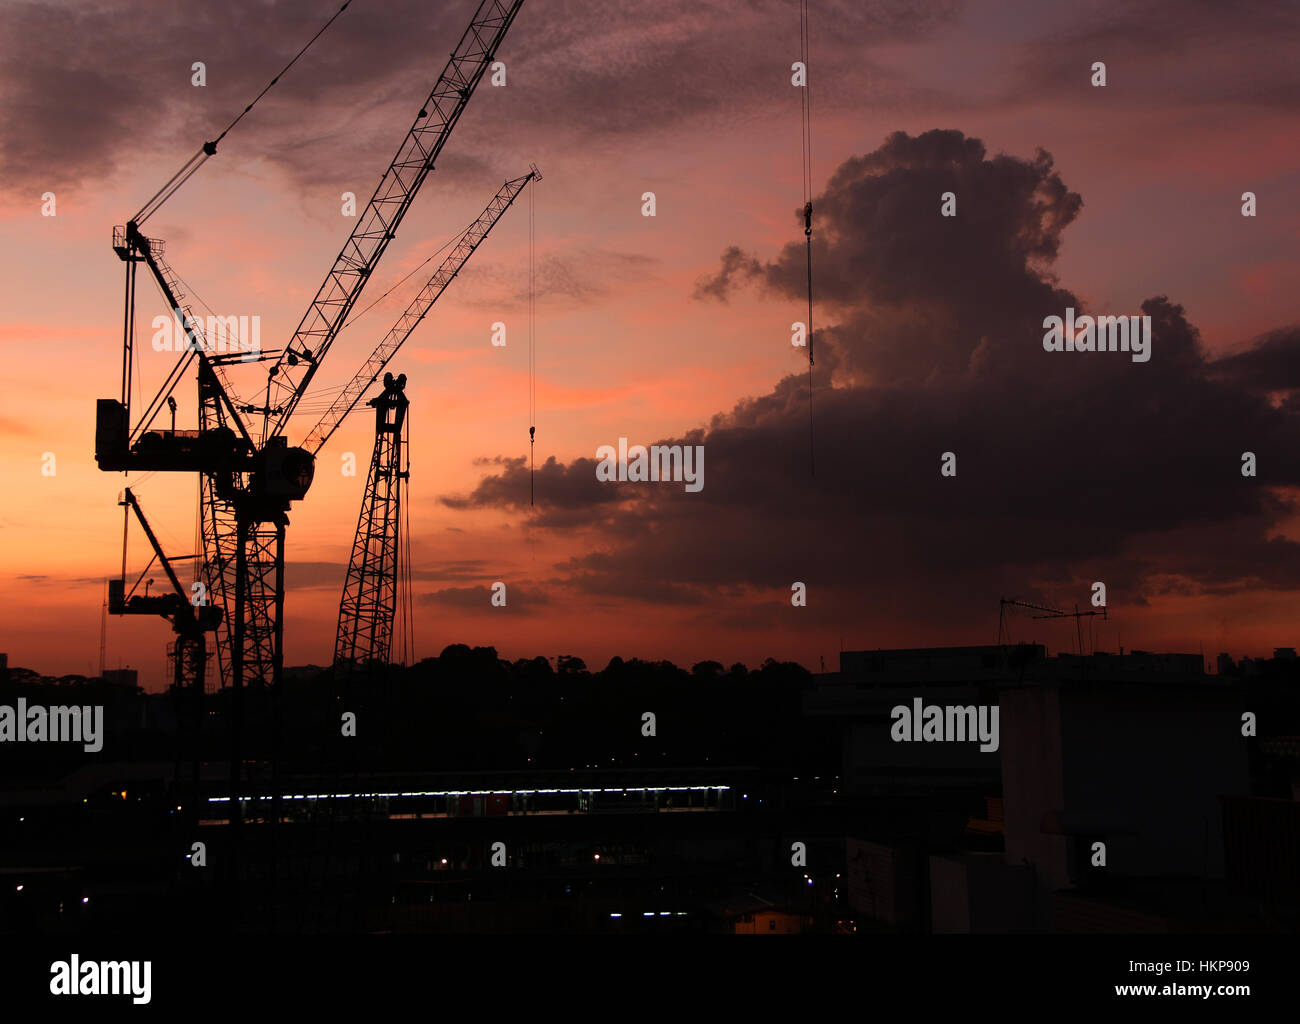 Bau Kran Silhouette auf der Sonnenuntergang Himmelshintergrund dramatische Wolke Stockfoto